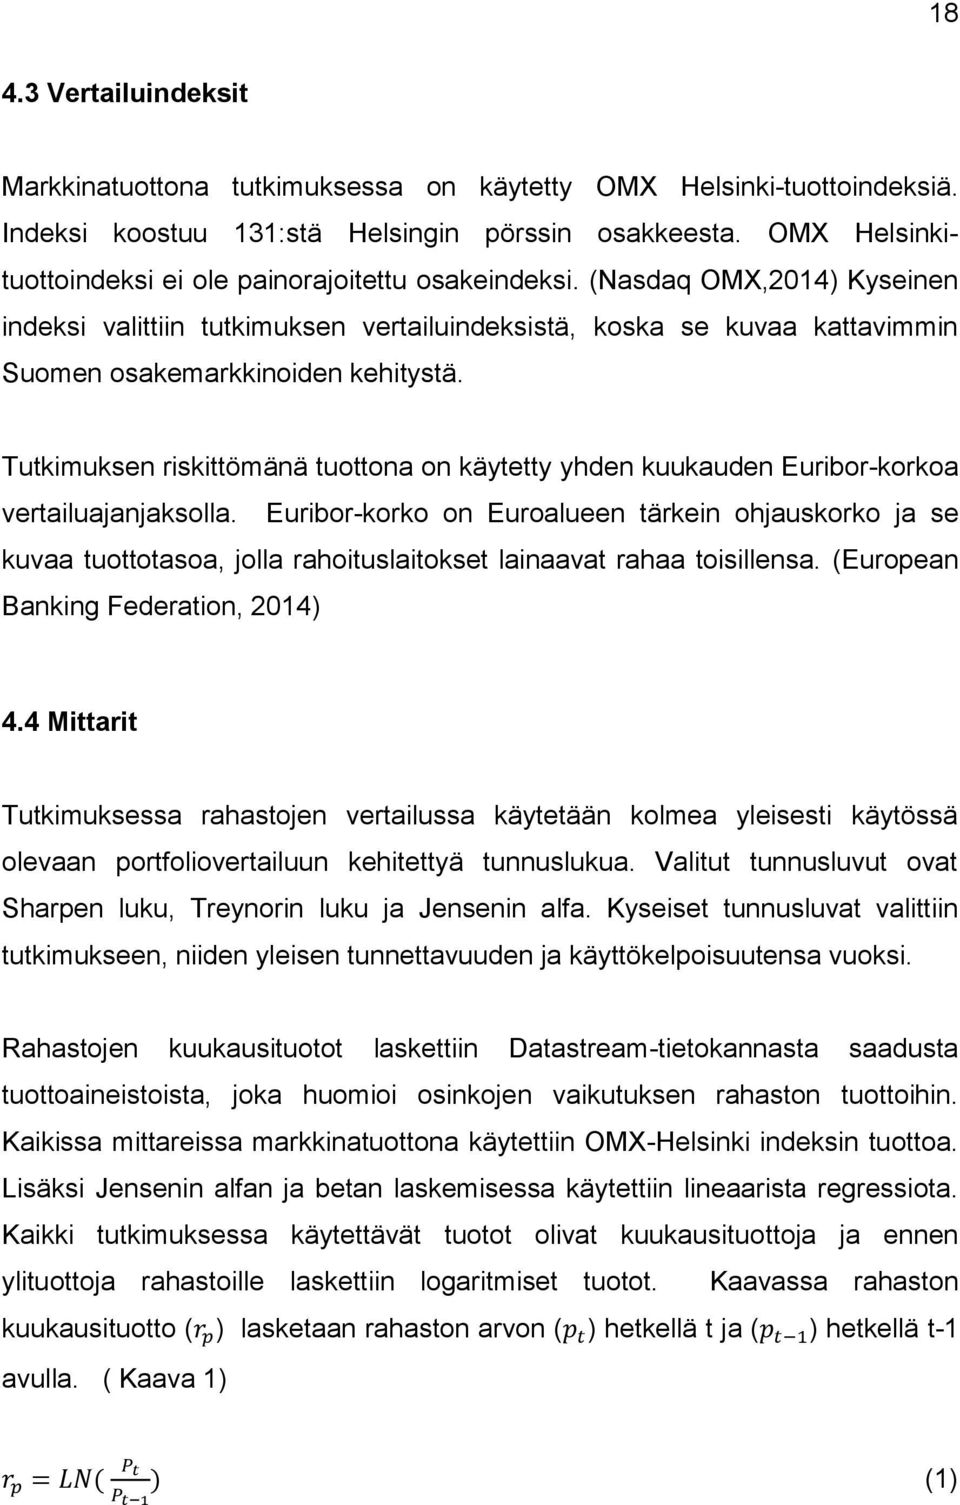 (Nasdaq OMX,2014) Kyseinen indeksi valittiin tutkimuksen vertailuindeksistä, koska se kuvaa kattavimmin Suomen osakemarkkinoiden kehitystä.